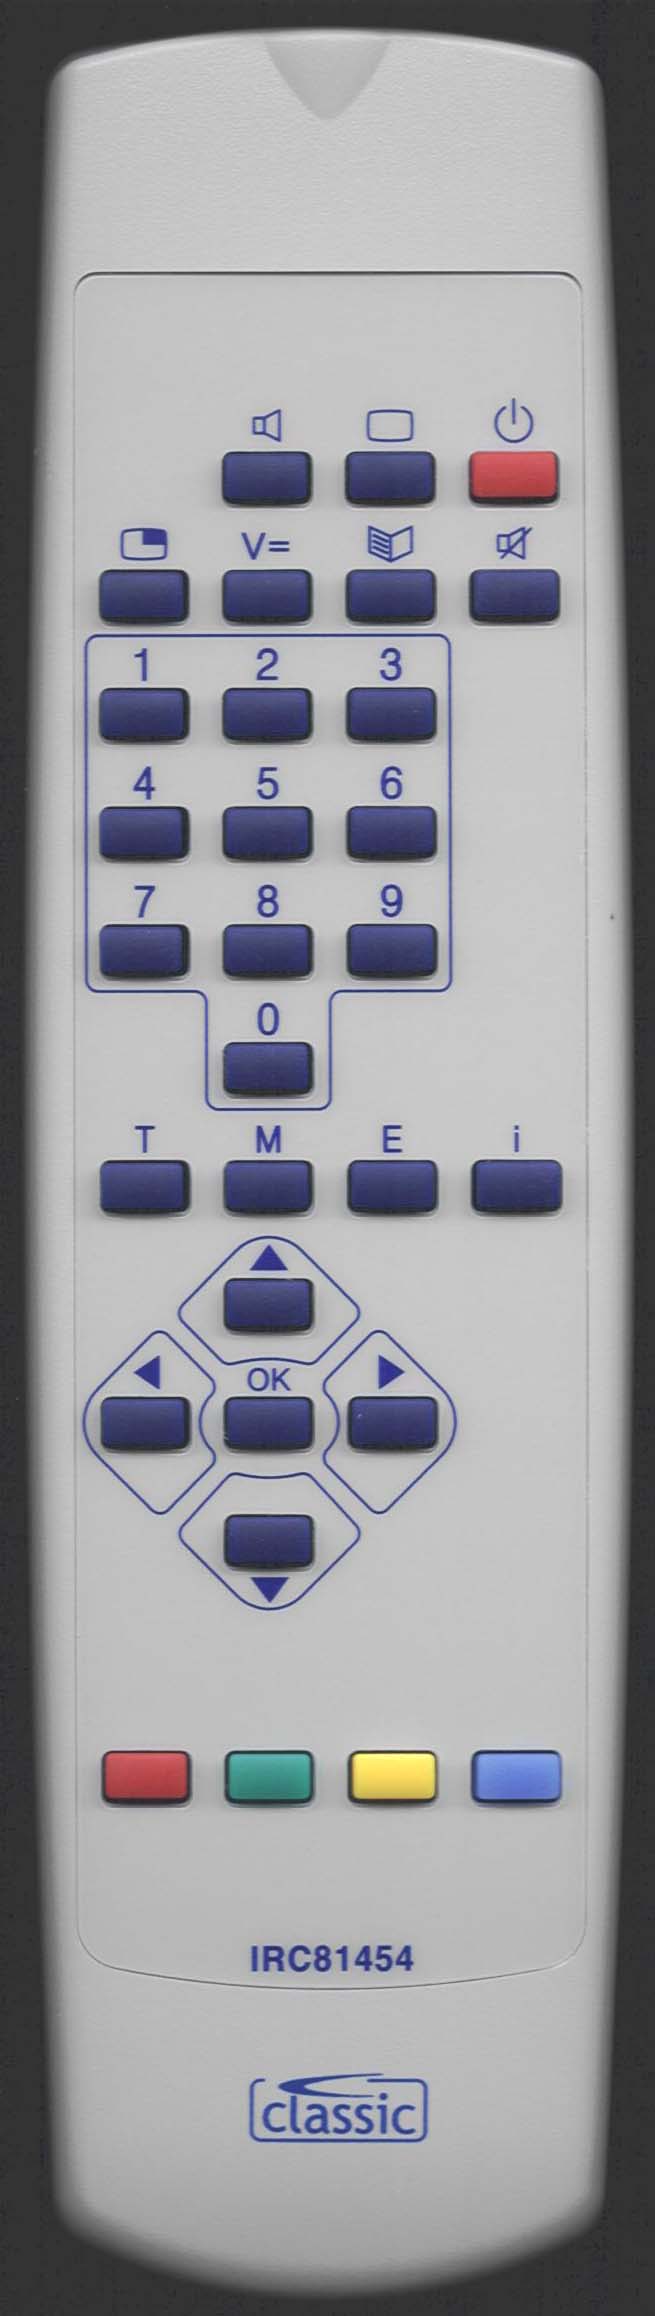 Loewe 87000 050 Remote Control